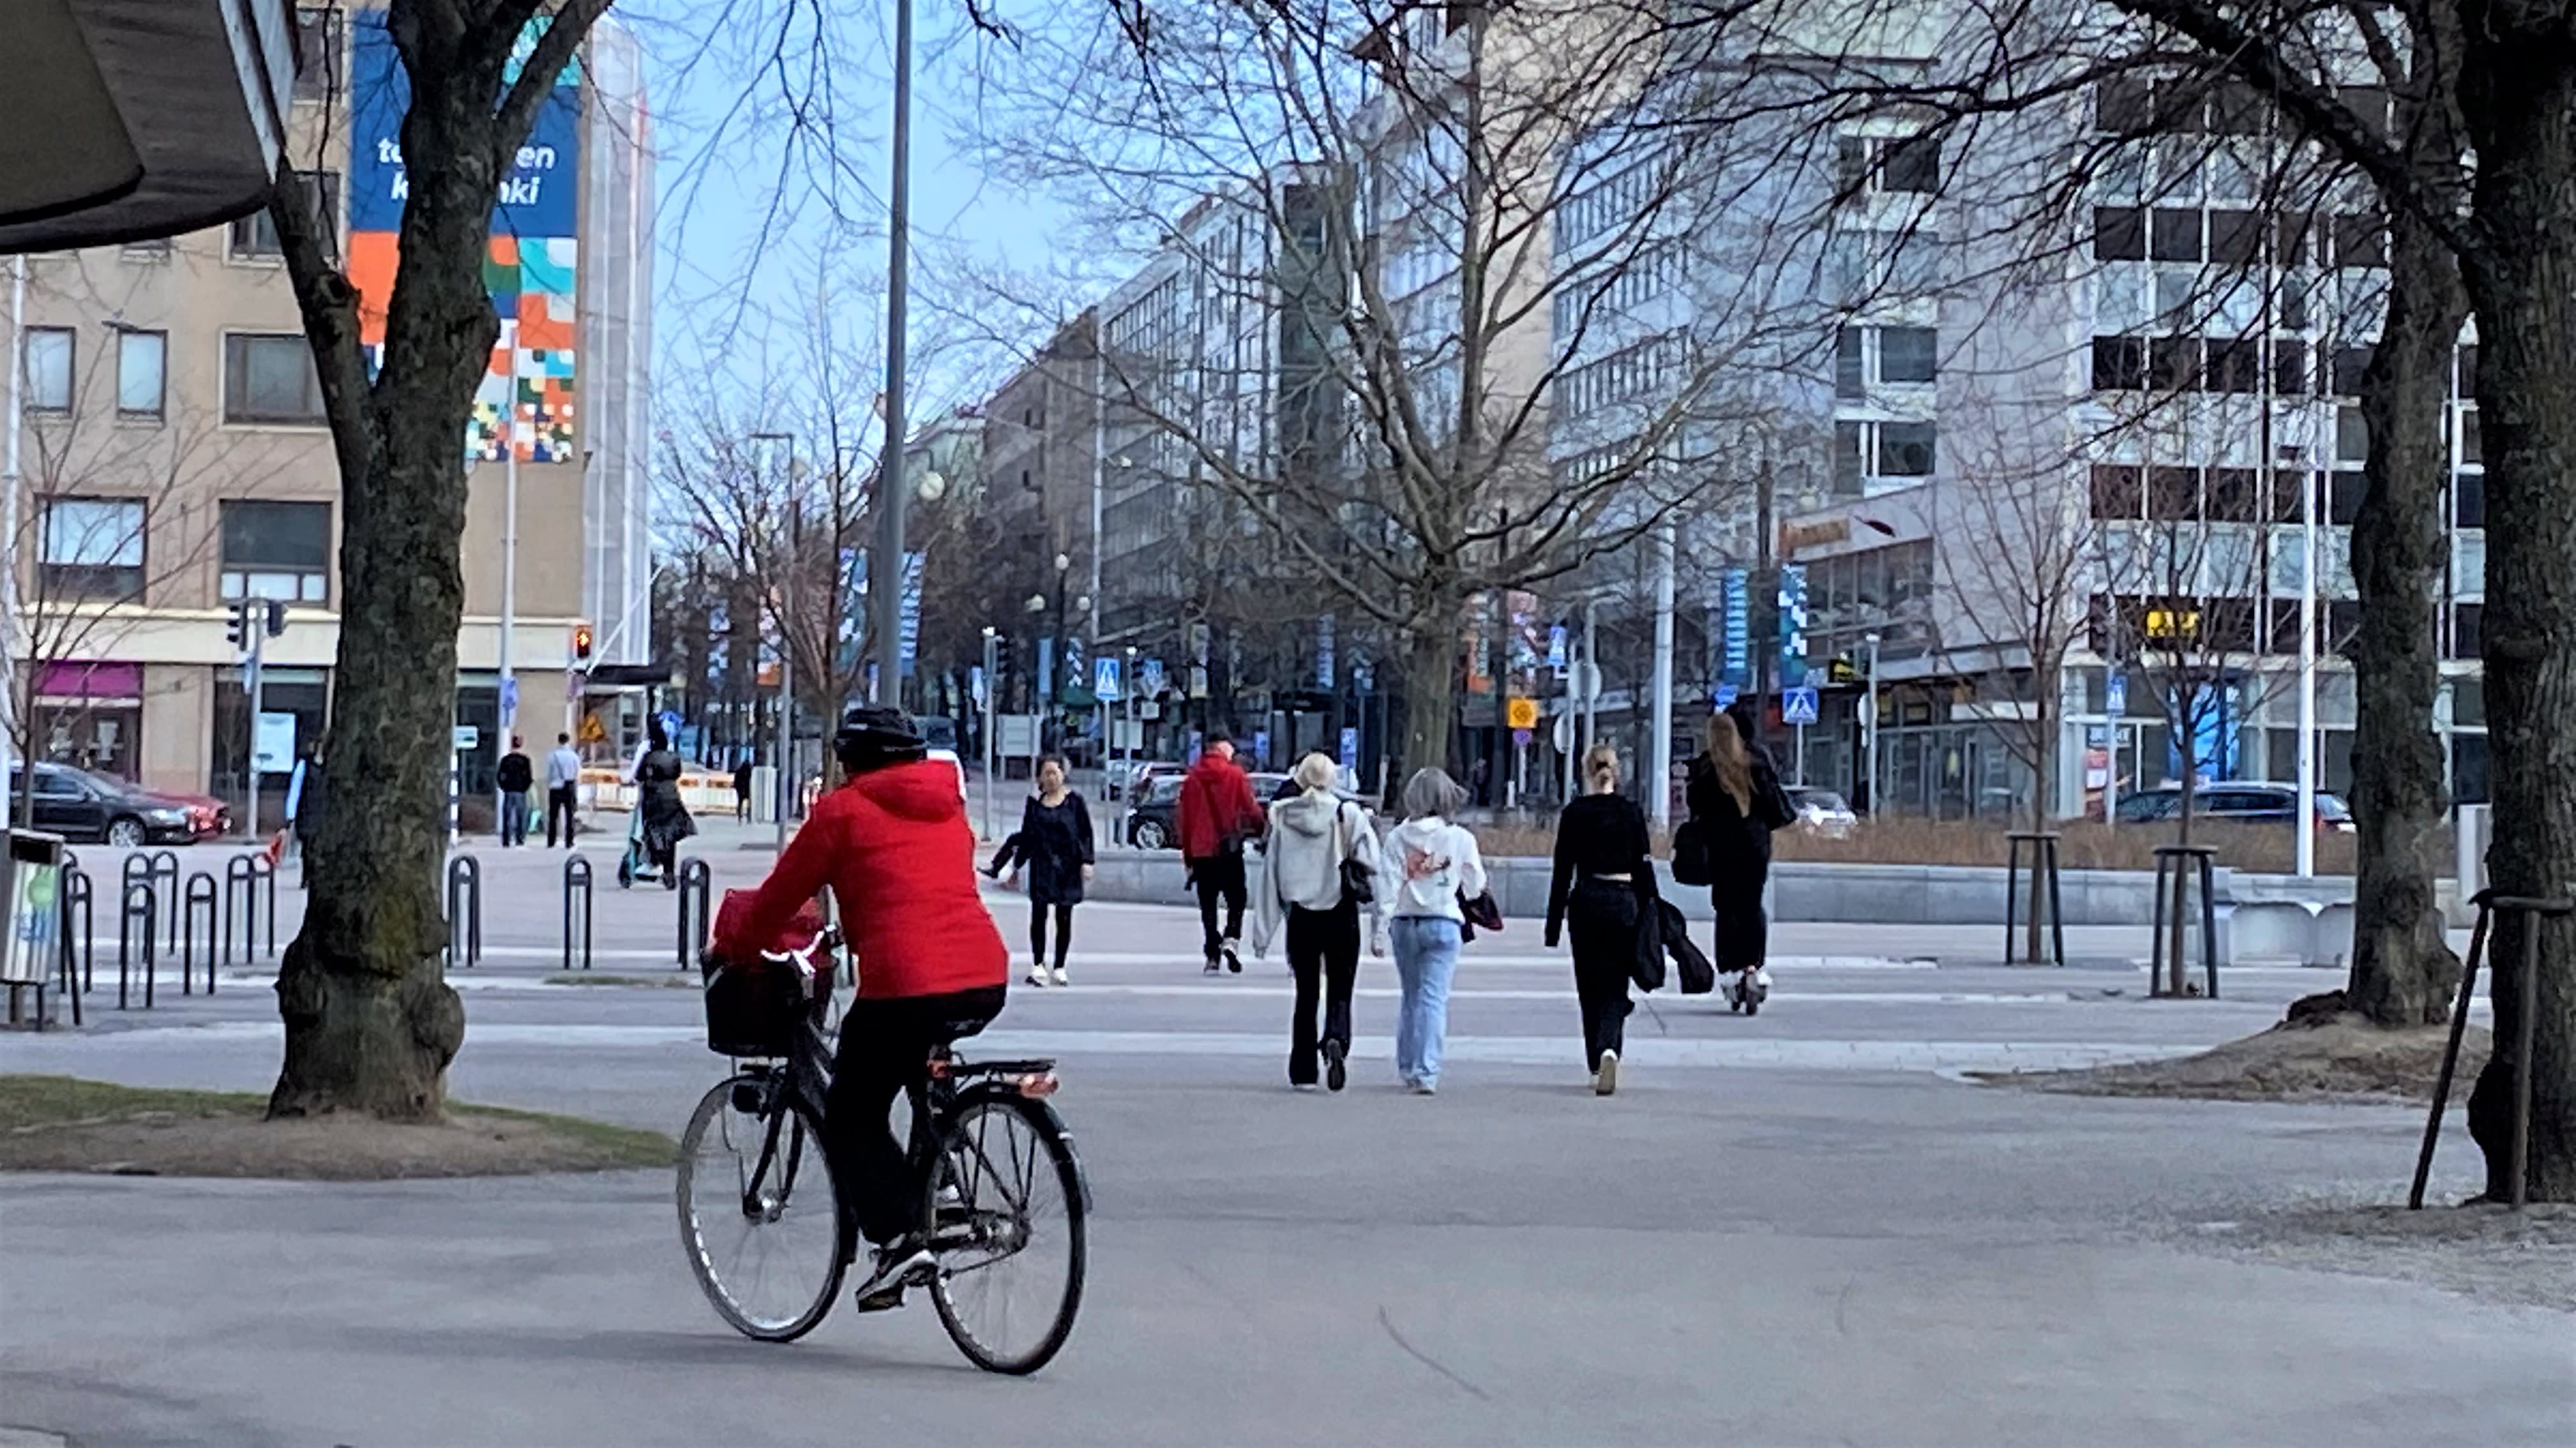 Pejalan kaki dan penunggang basikal paling kerap mati dalam lalu lintas bandar, 44% daripada pejalan kaki mati di persimpangan